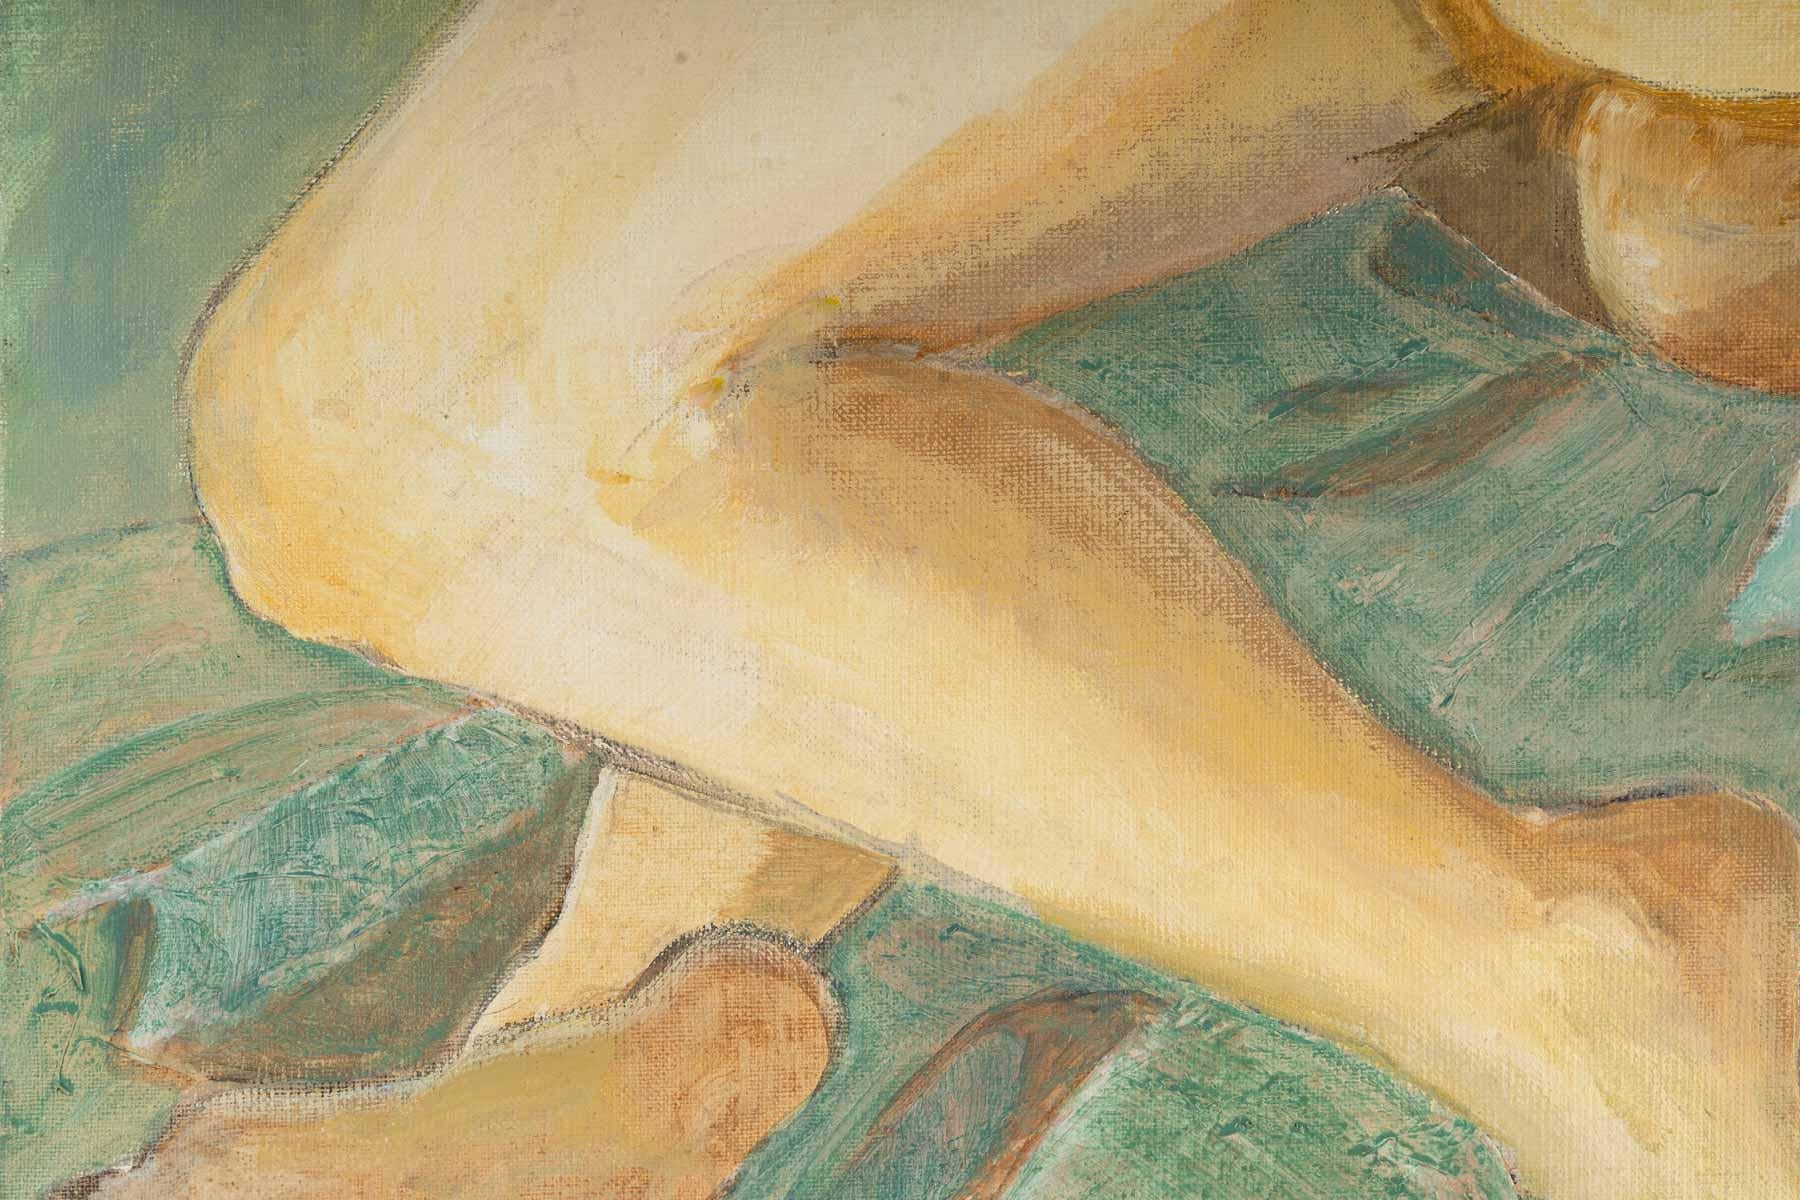 Femme nue allongée, 20e siècle.
Evelyne Luez, Ecole de Paris.
Huile sur toile
Mesures : H : 40 cm, L : 80 cm, P : 2 cm.